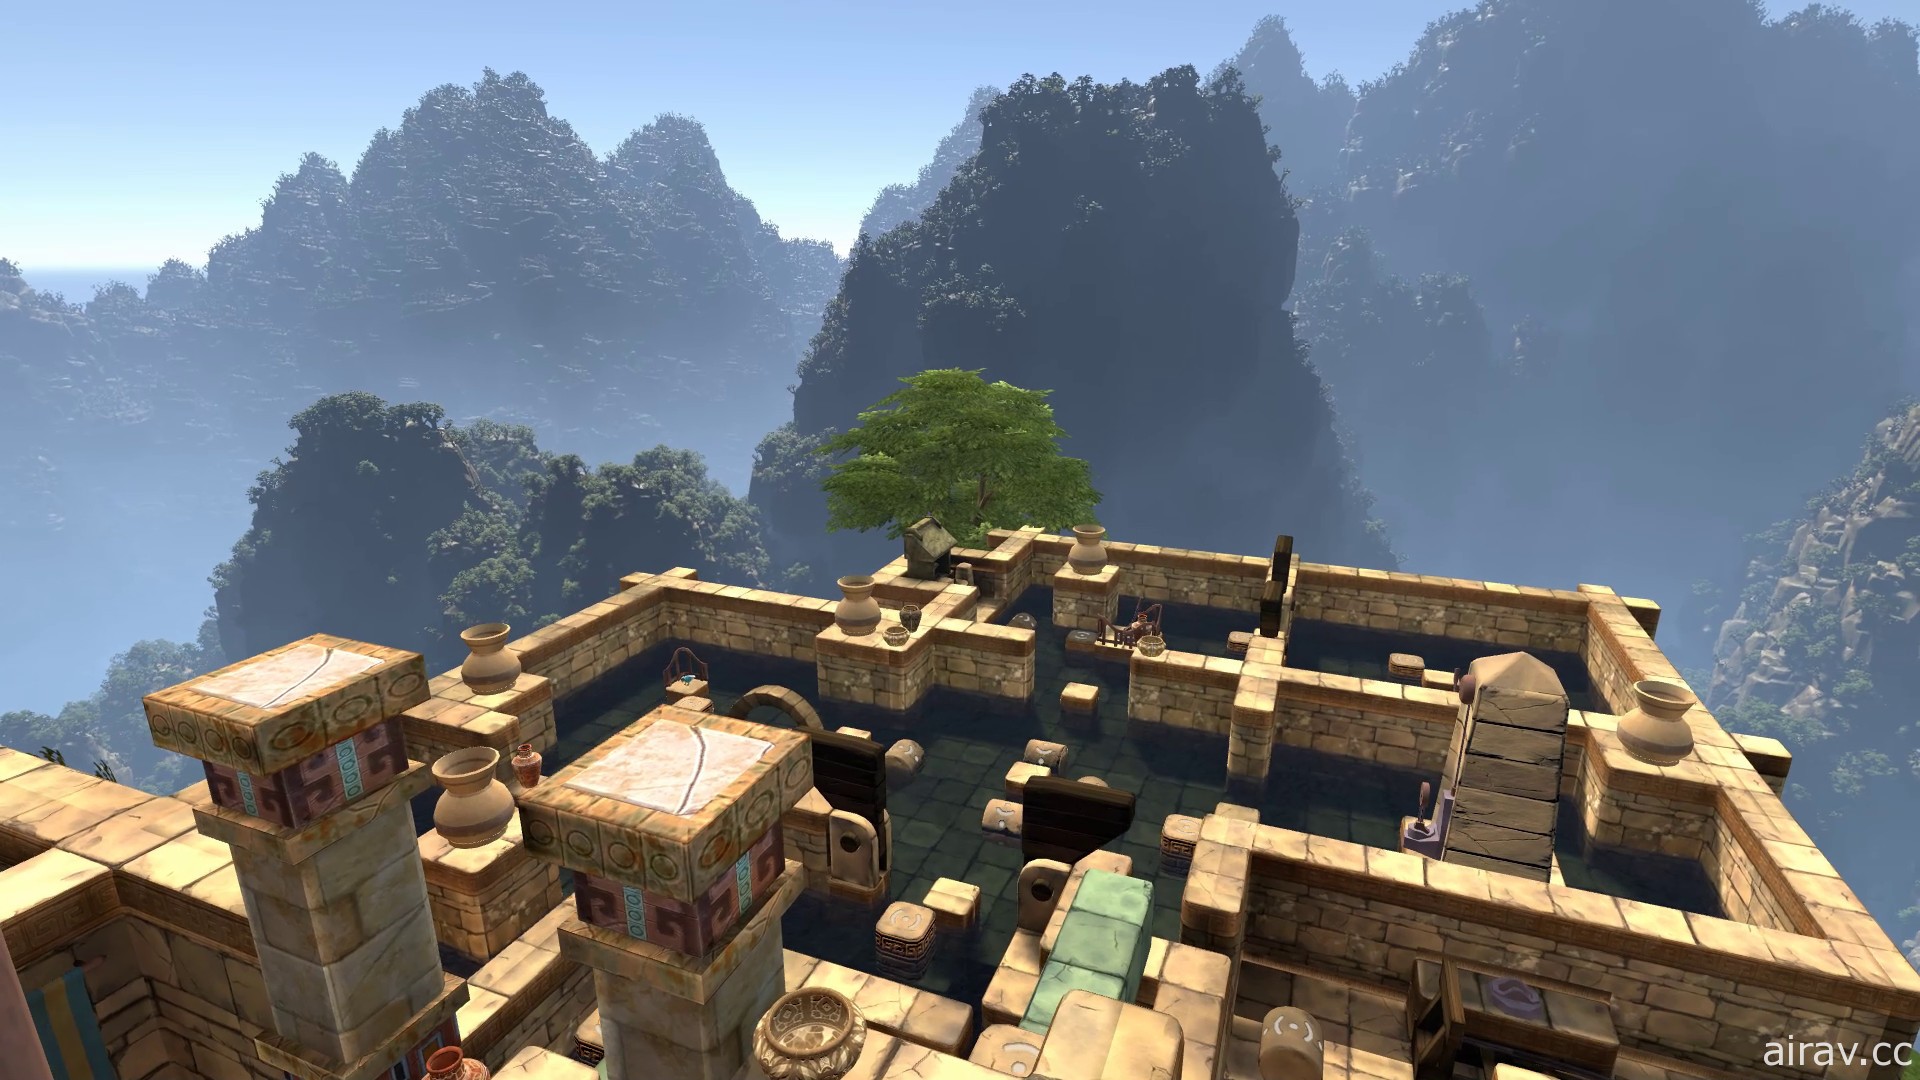 VR 新作《神殿之眼》10 月 14 日問世 以第一人稱視角身歷其境探索神廟